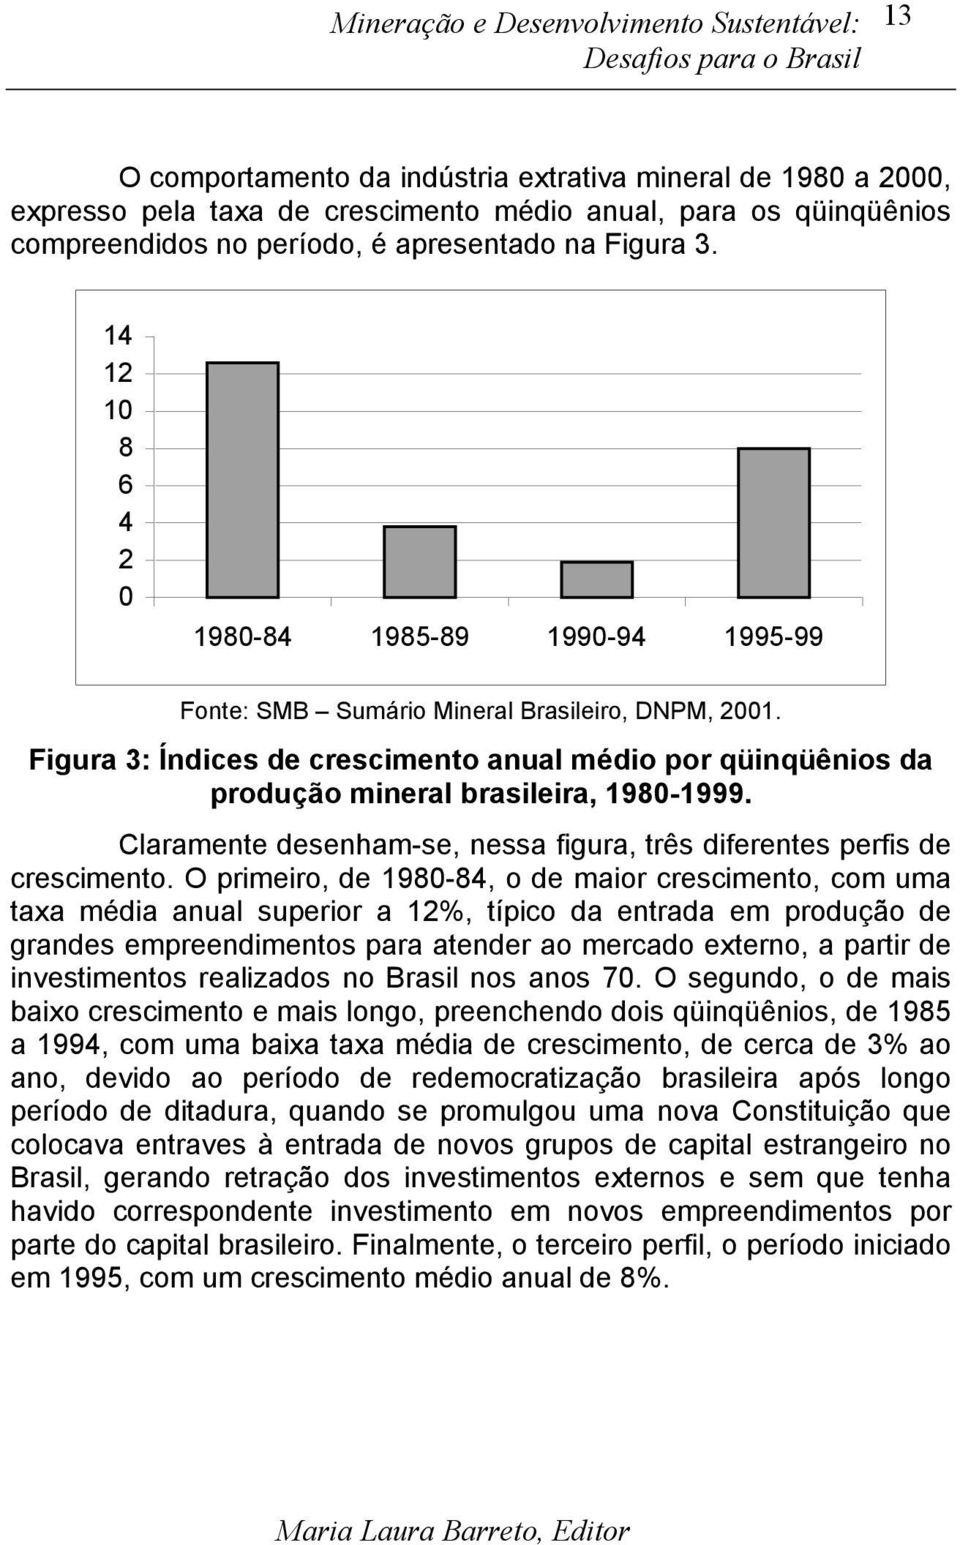 Figura 3: Índices de crescimento anual médio por qüinqüênios da produção mineral brasileira, 1980-1999. Claramente desenham-se, nessa figura, três diferentes perfis de crescimento.